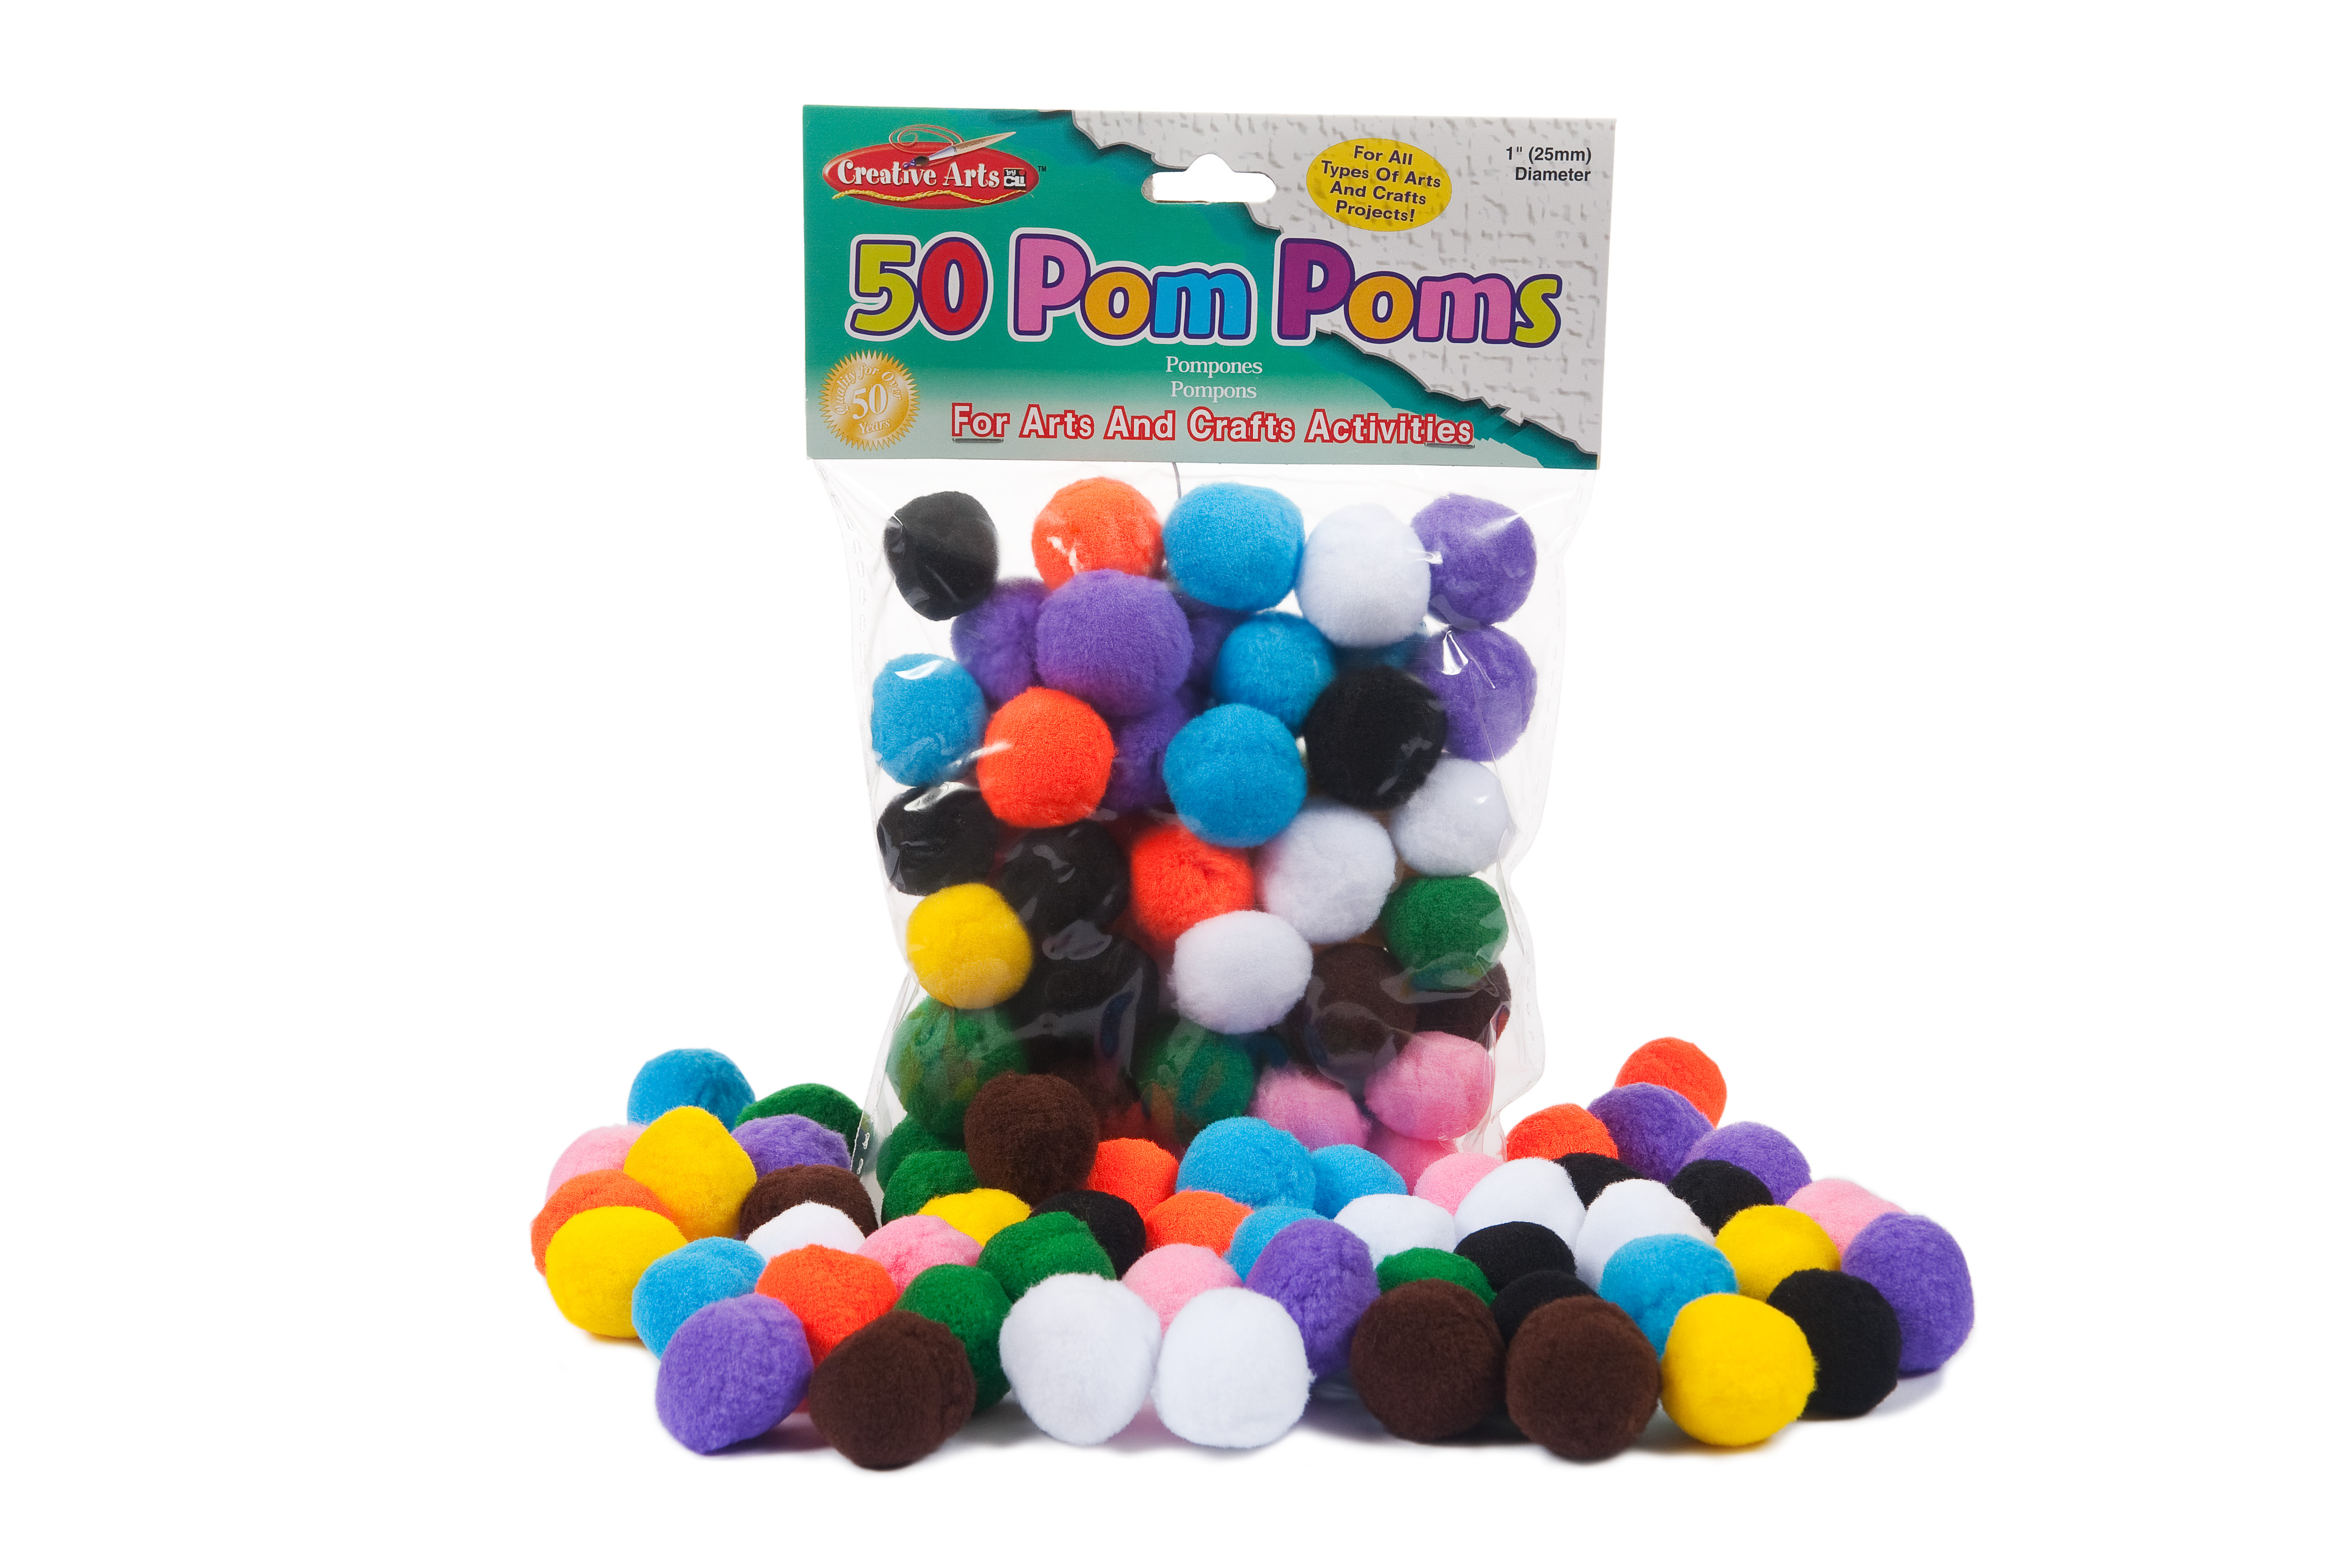 Pom-Poms Crafts Activities 50/Bag